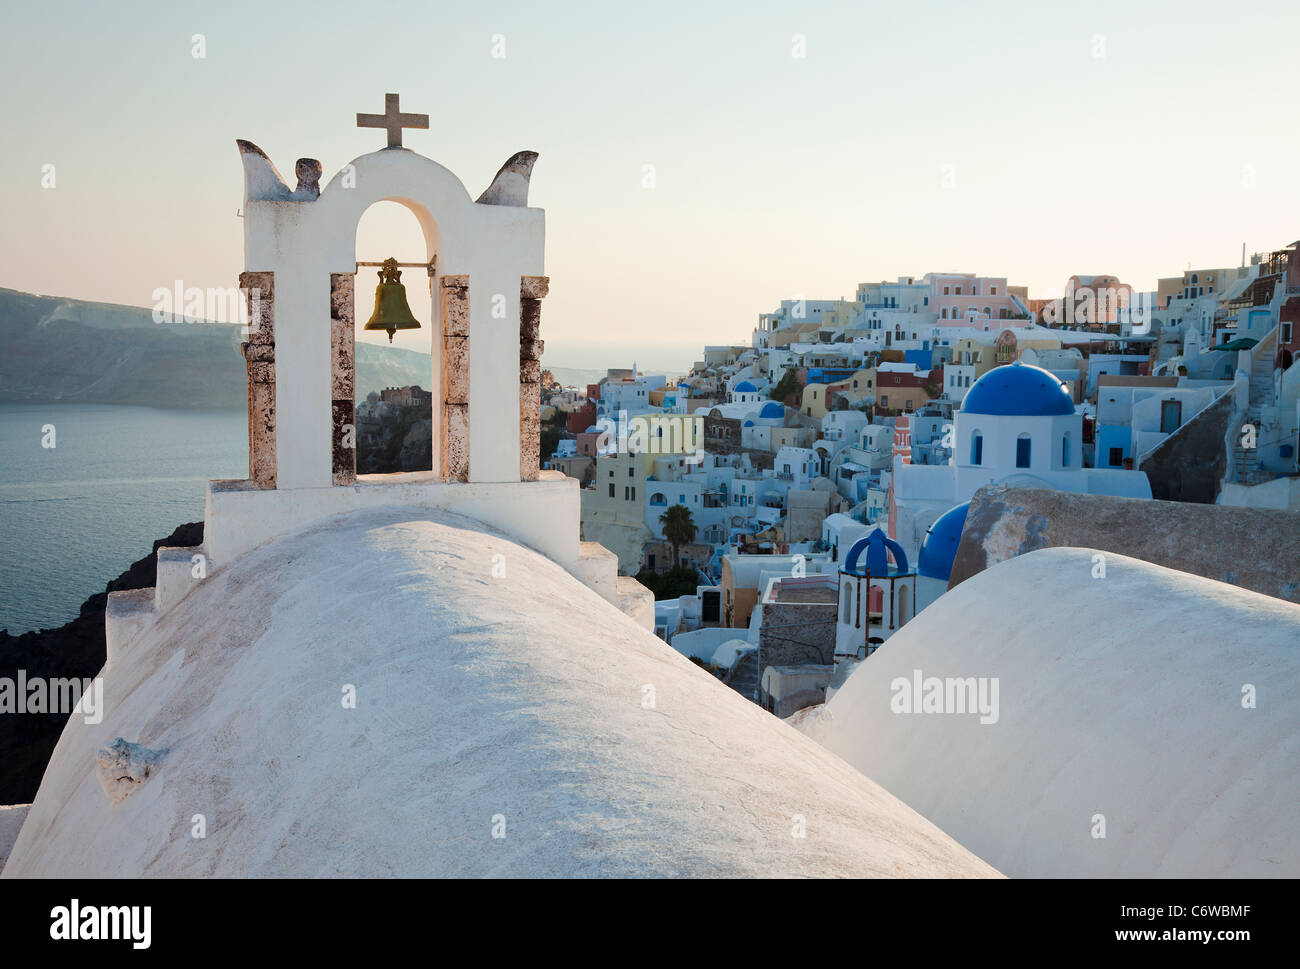 La chiesa che si affaccia sul mare nel villaggio di Oia (la), Santorini (Thira), Isole Cicladi, il Mare Egeo, in Grecia, in Europa Foto Stock